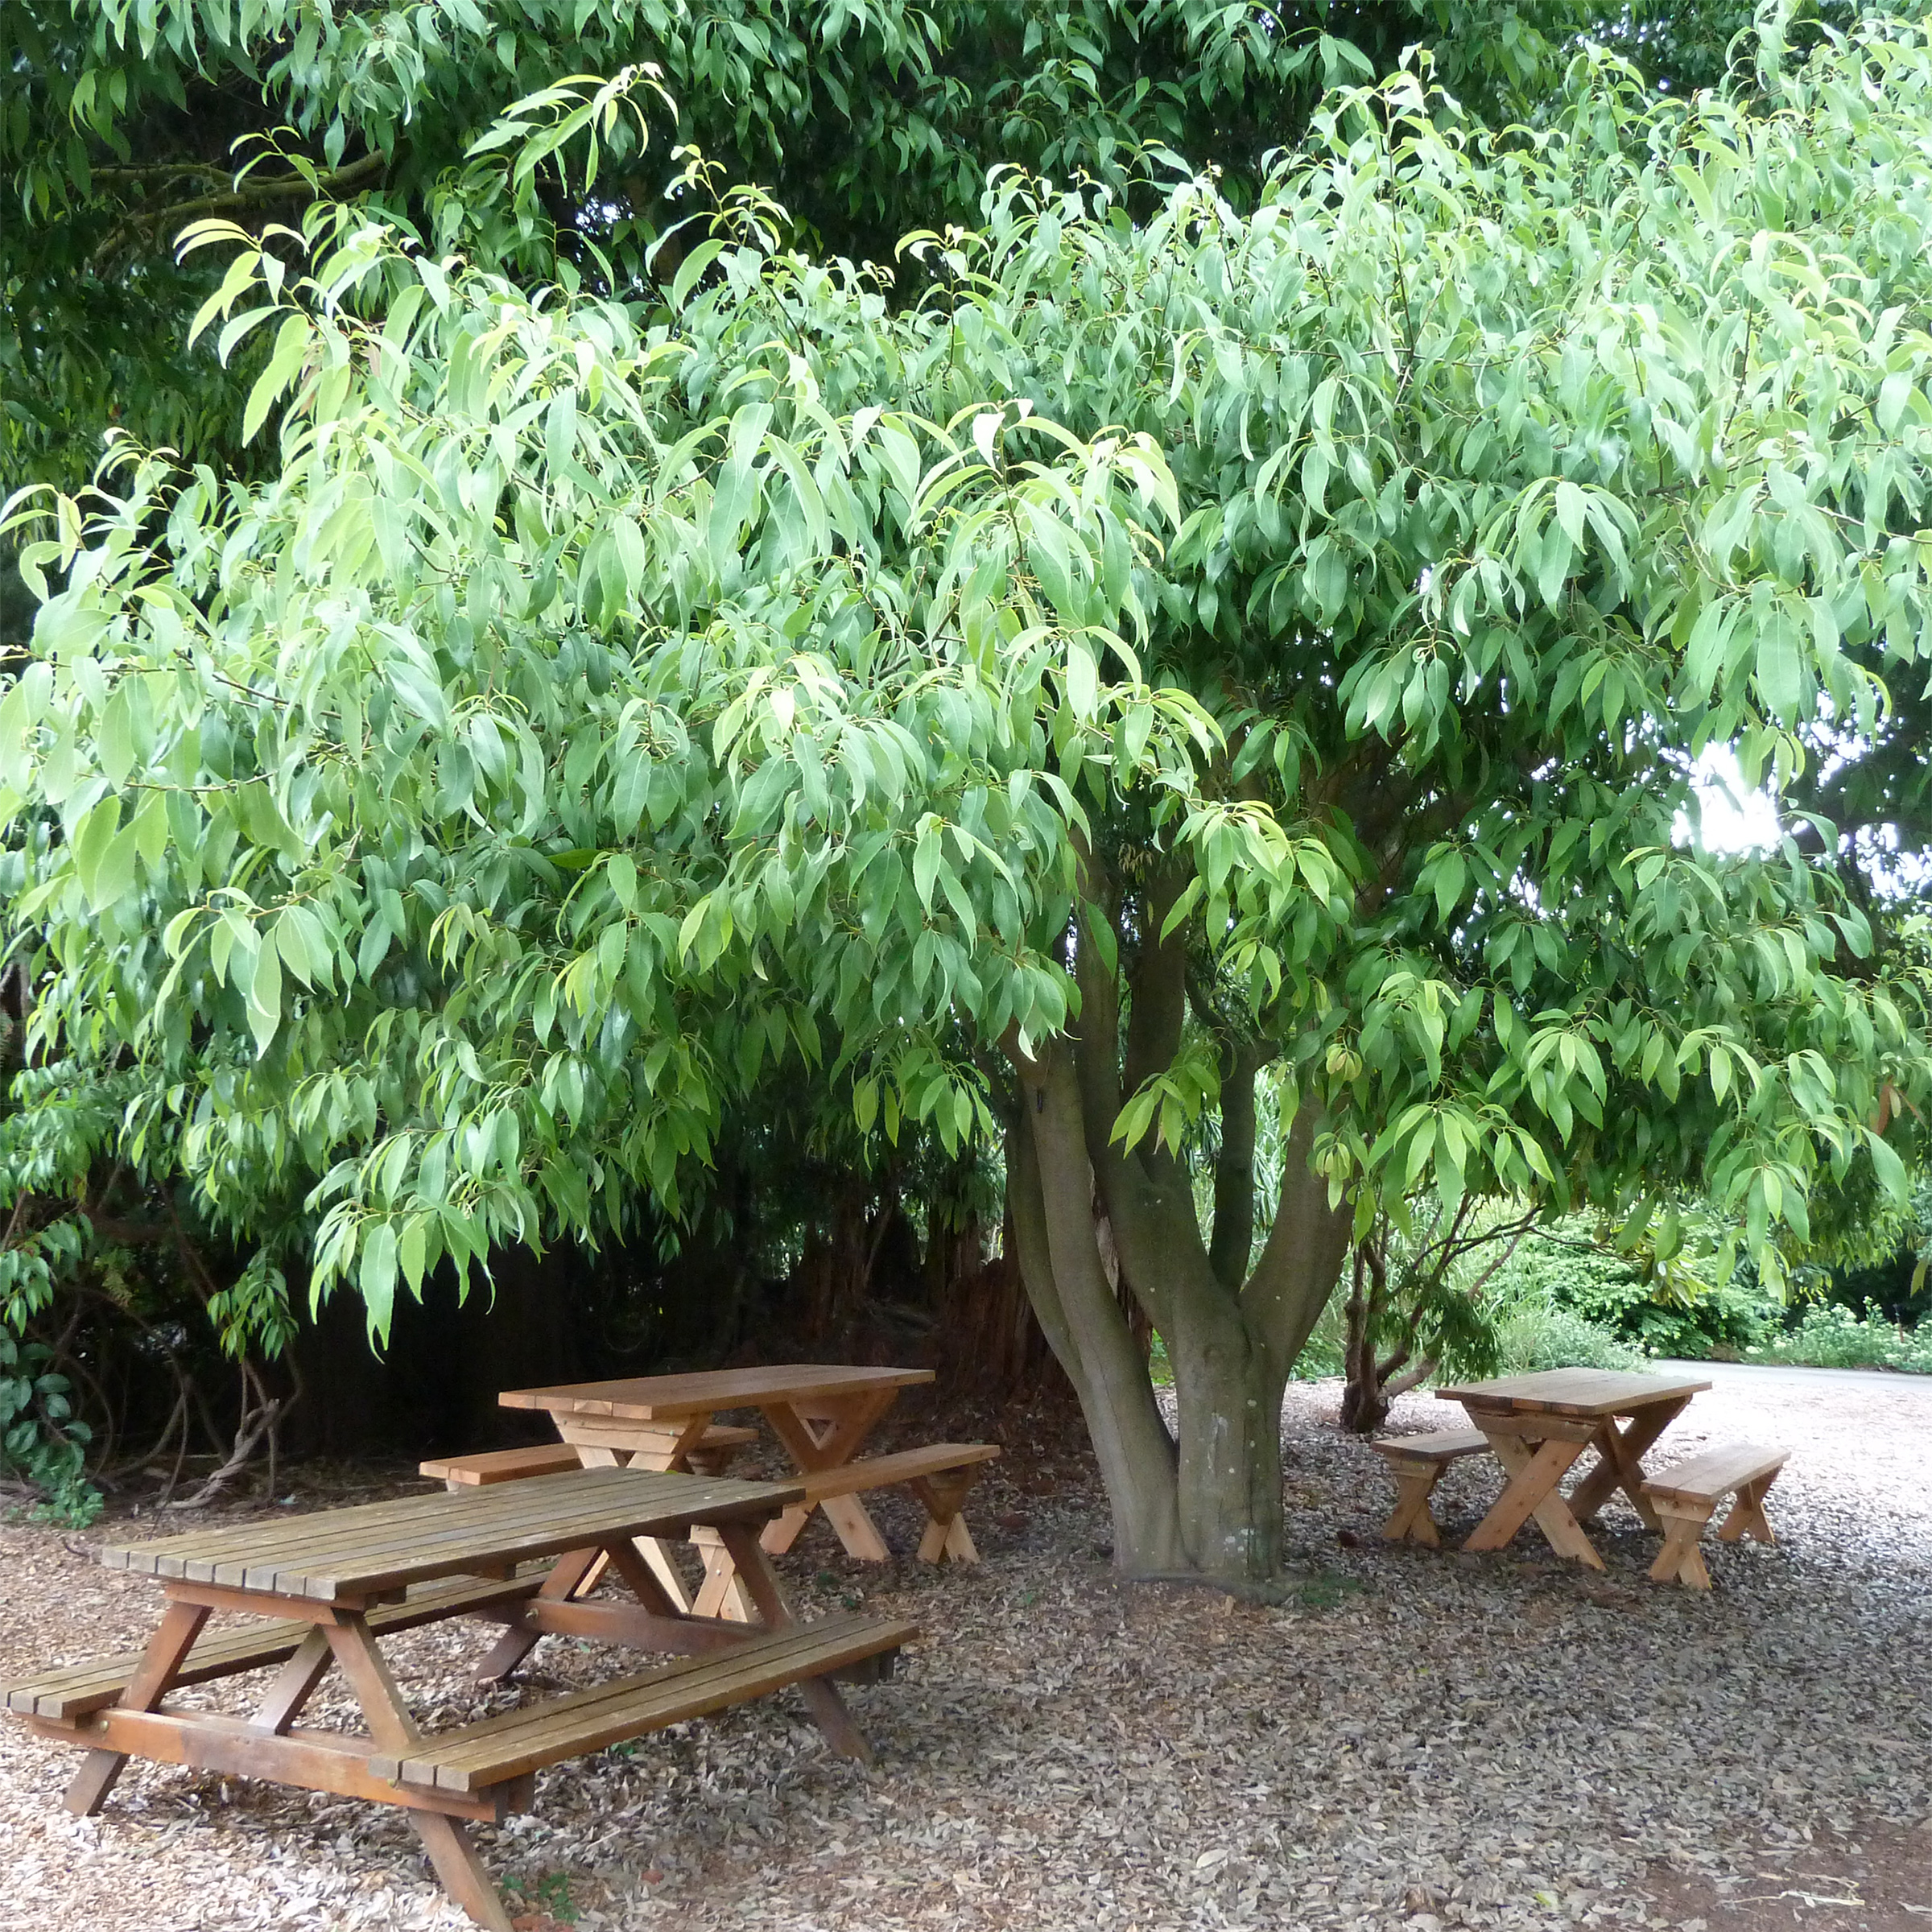 Quercus myrsinifolia - Chêne à feuilles de myrsine